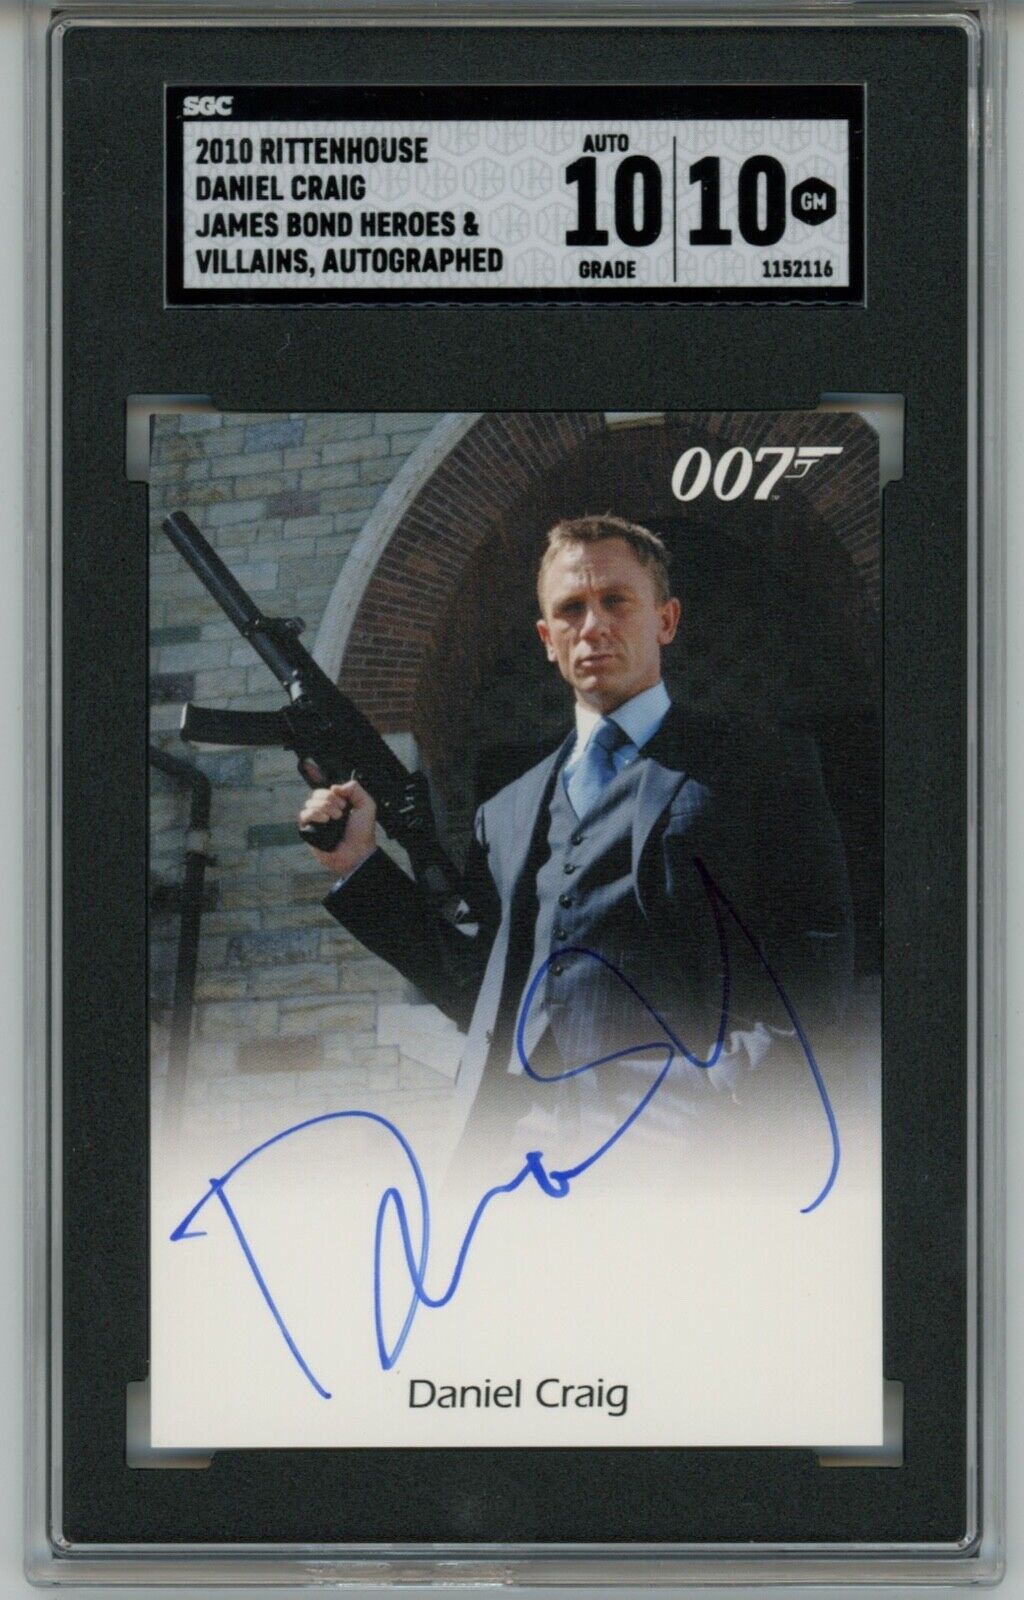 2010 Rittenhouse James Bond Daniel Craig Casino Royale Auto Autograph SGC 10